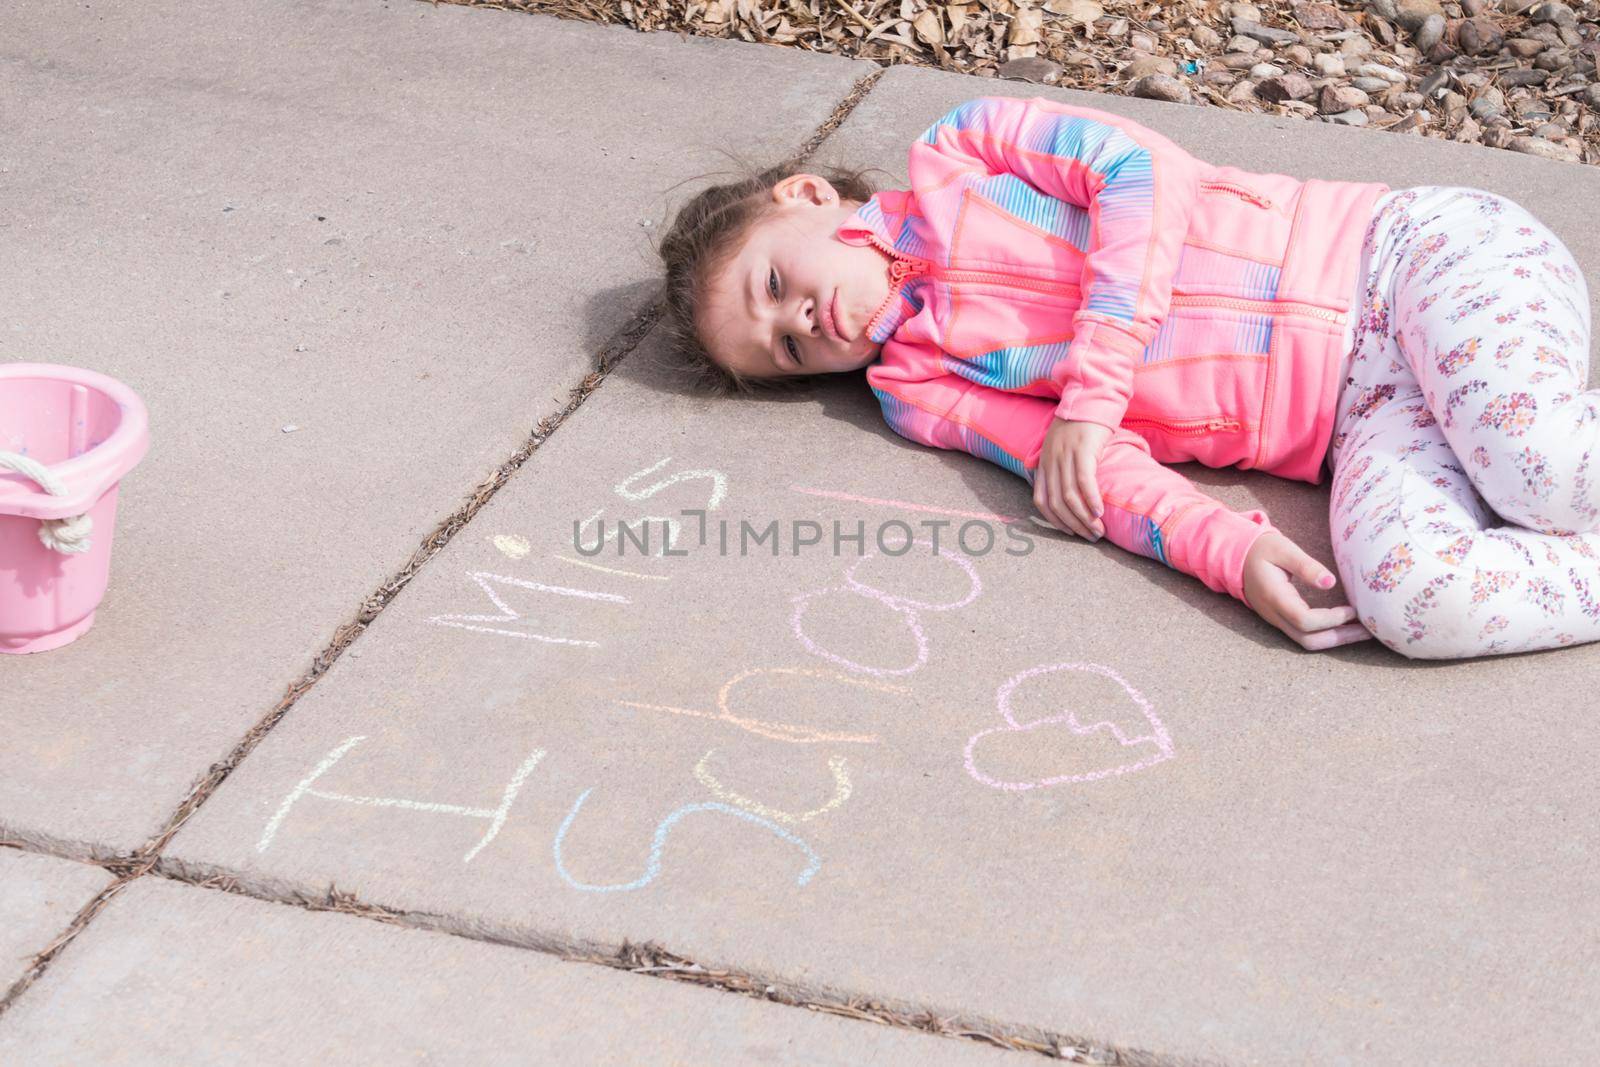 I miss school chalk sign in driveway.